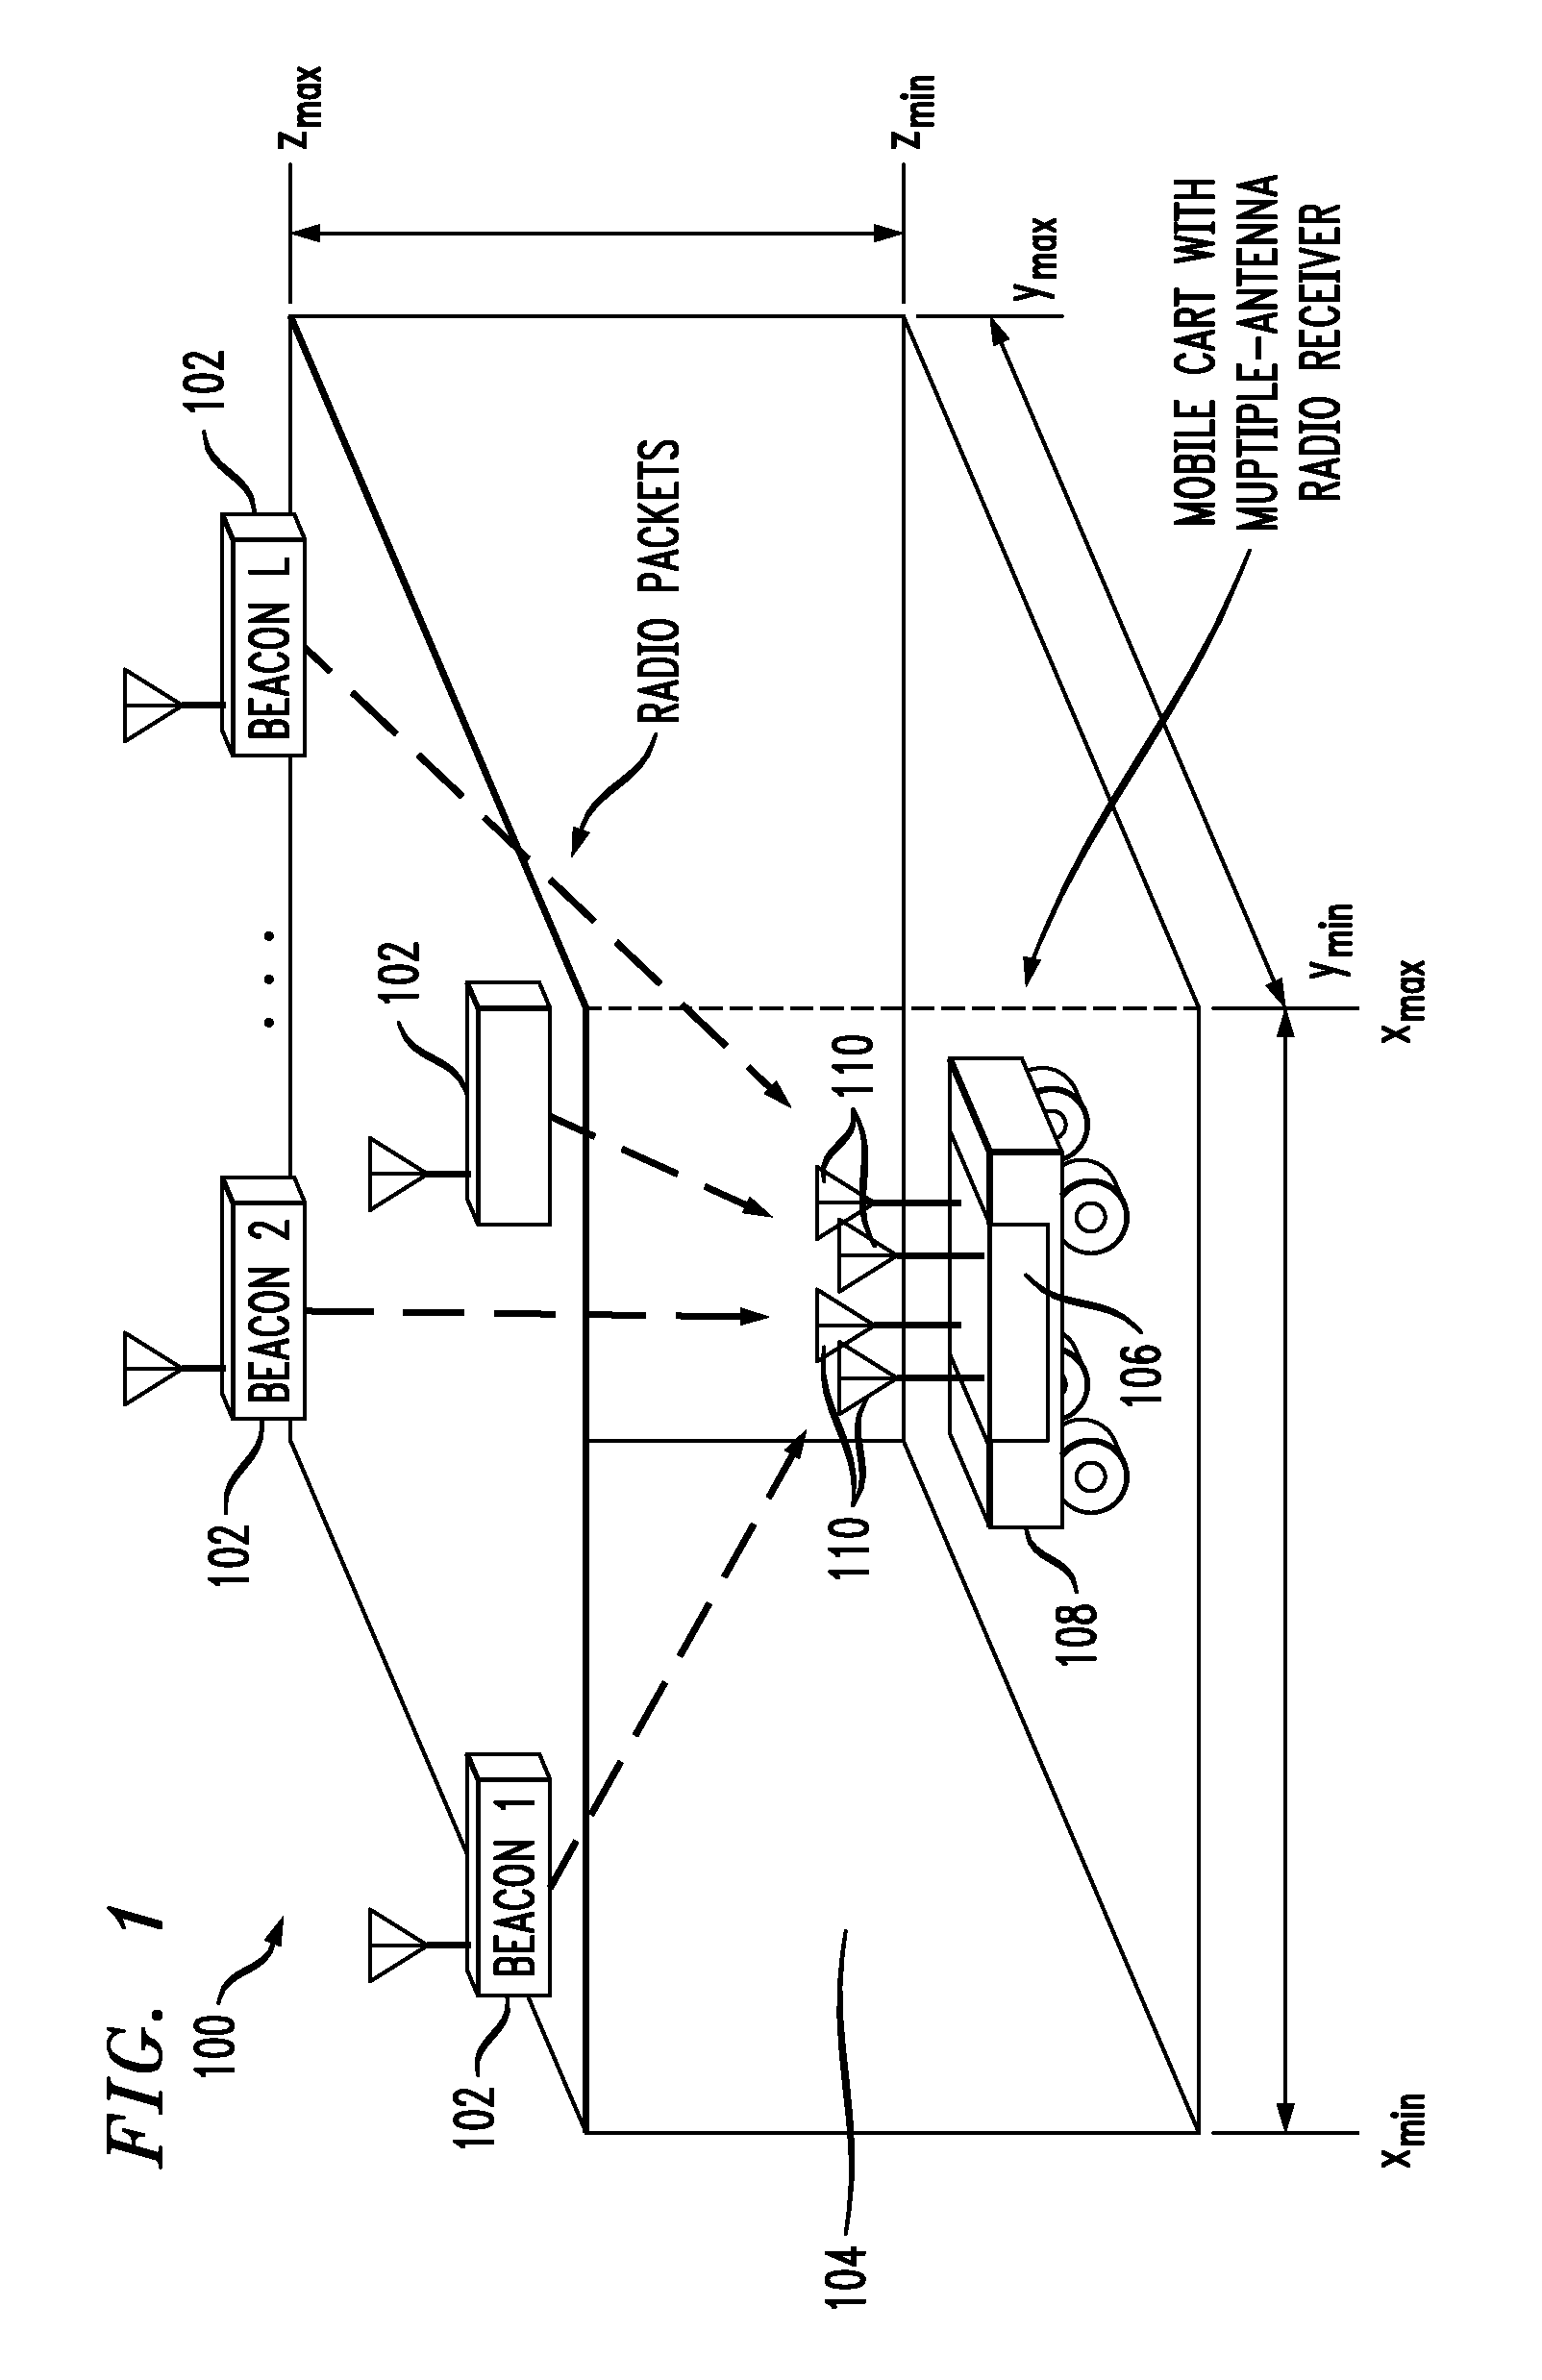 Estimating location using multi-antenna radio receiver